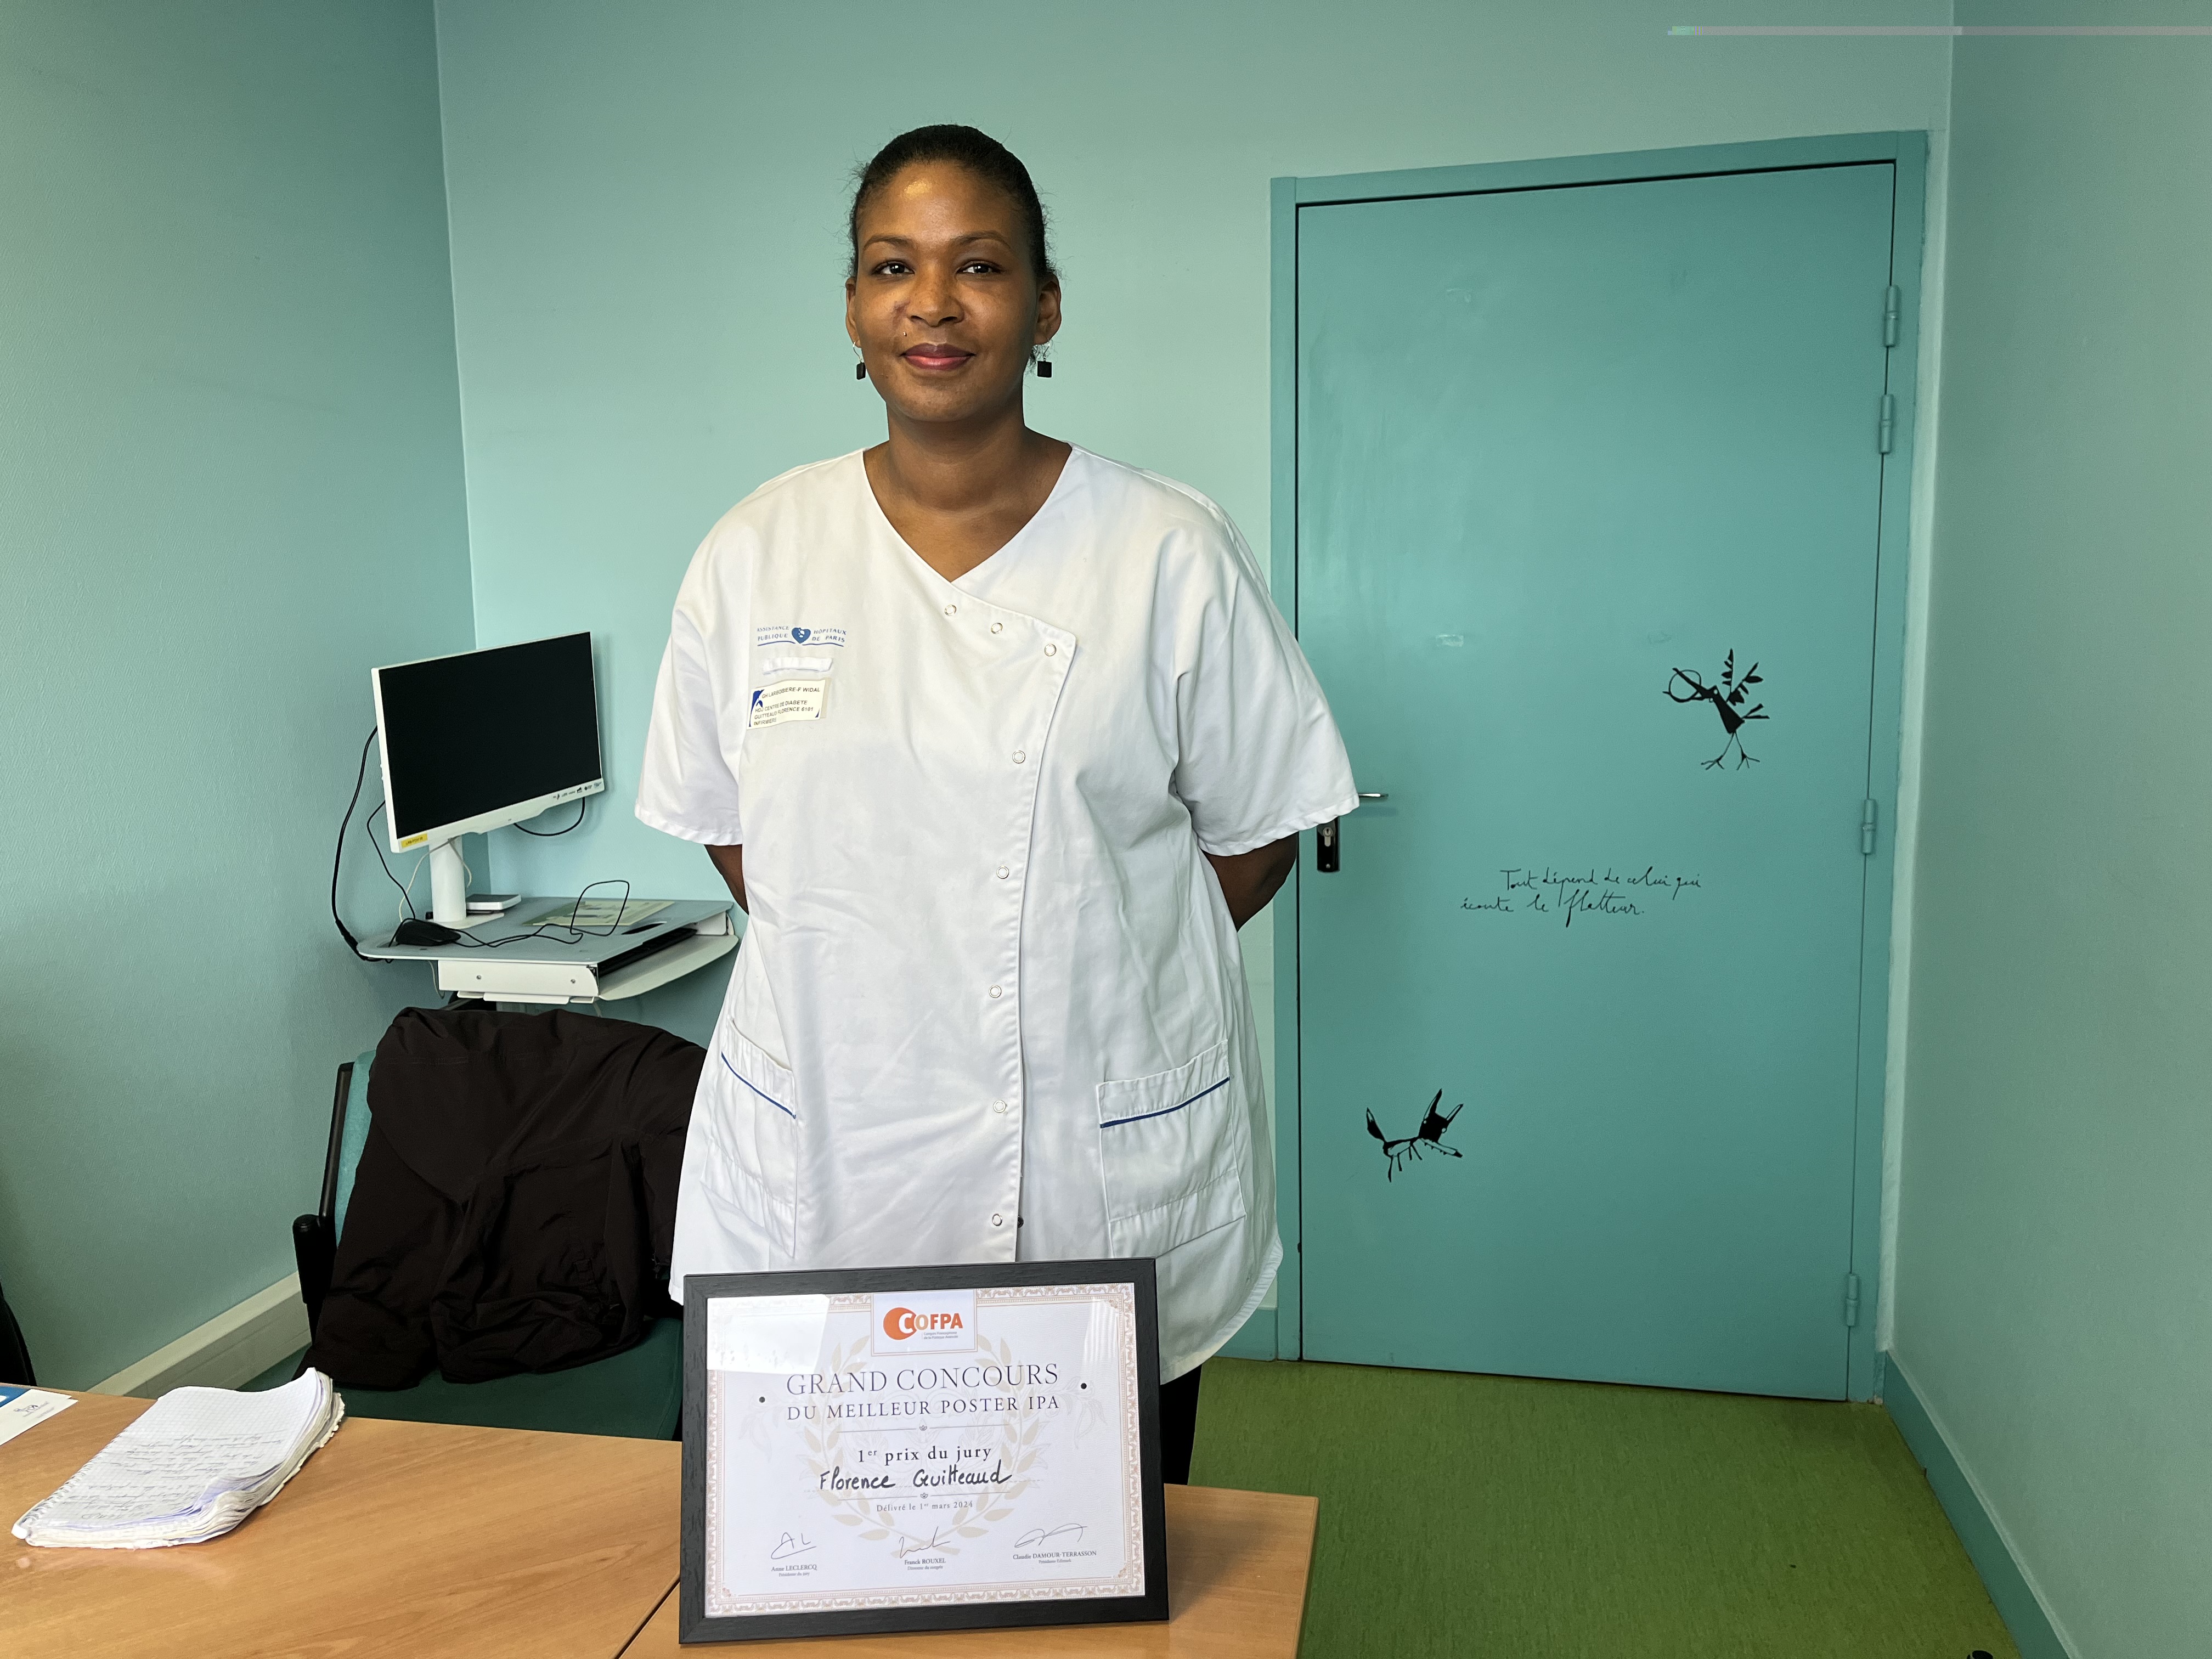     Une infirmière antillaise récompensée au Congrès francophone de la pratique avancée

